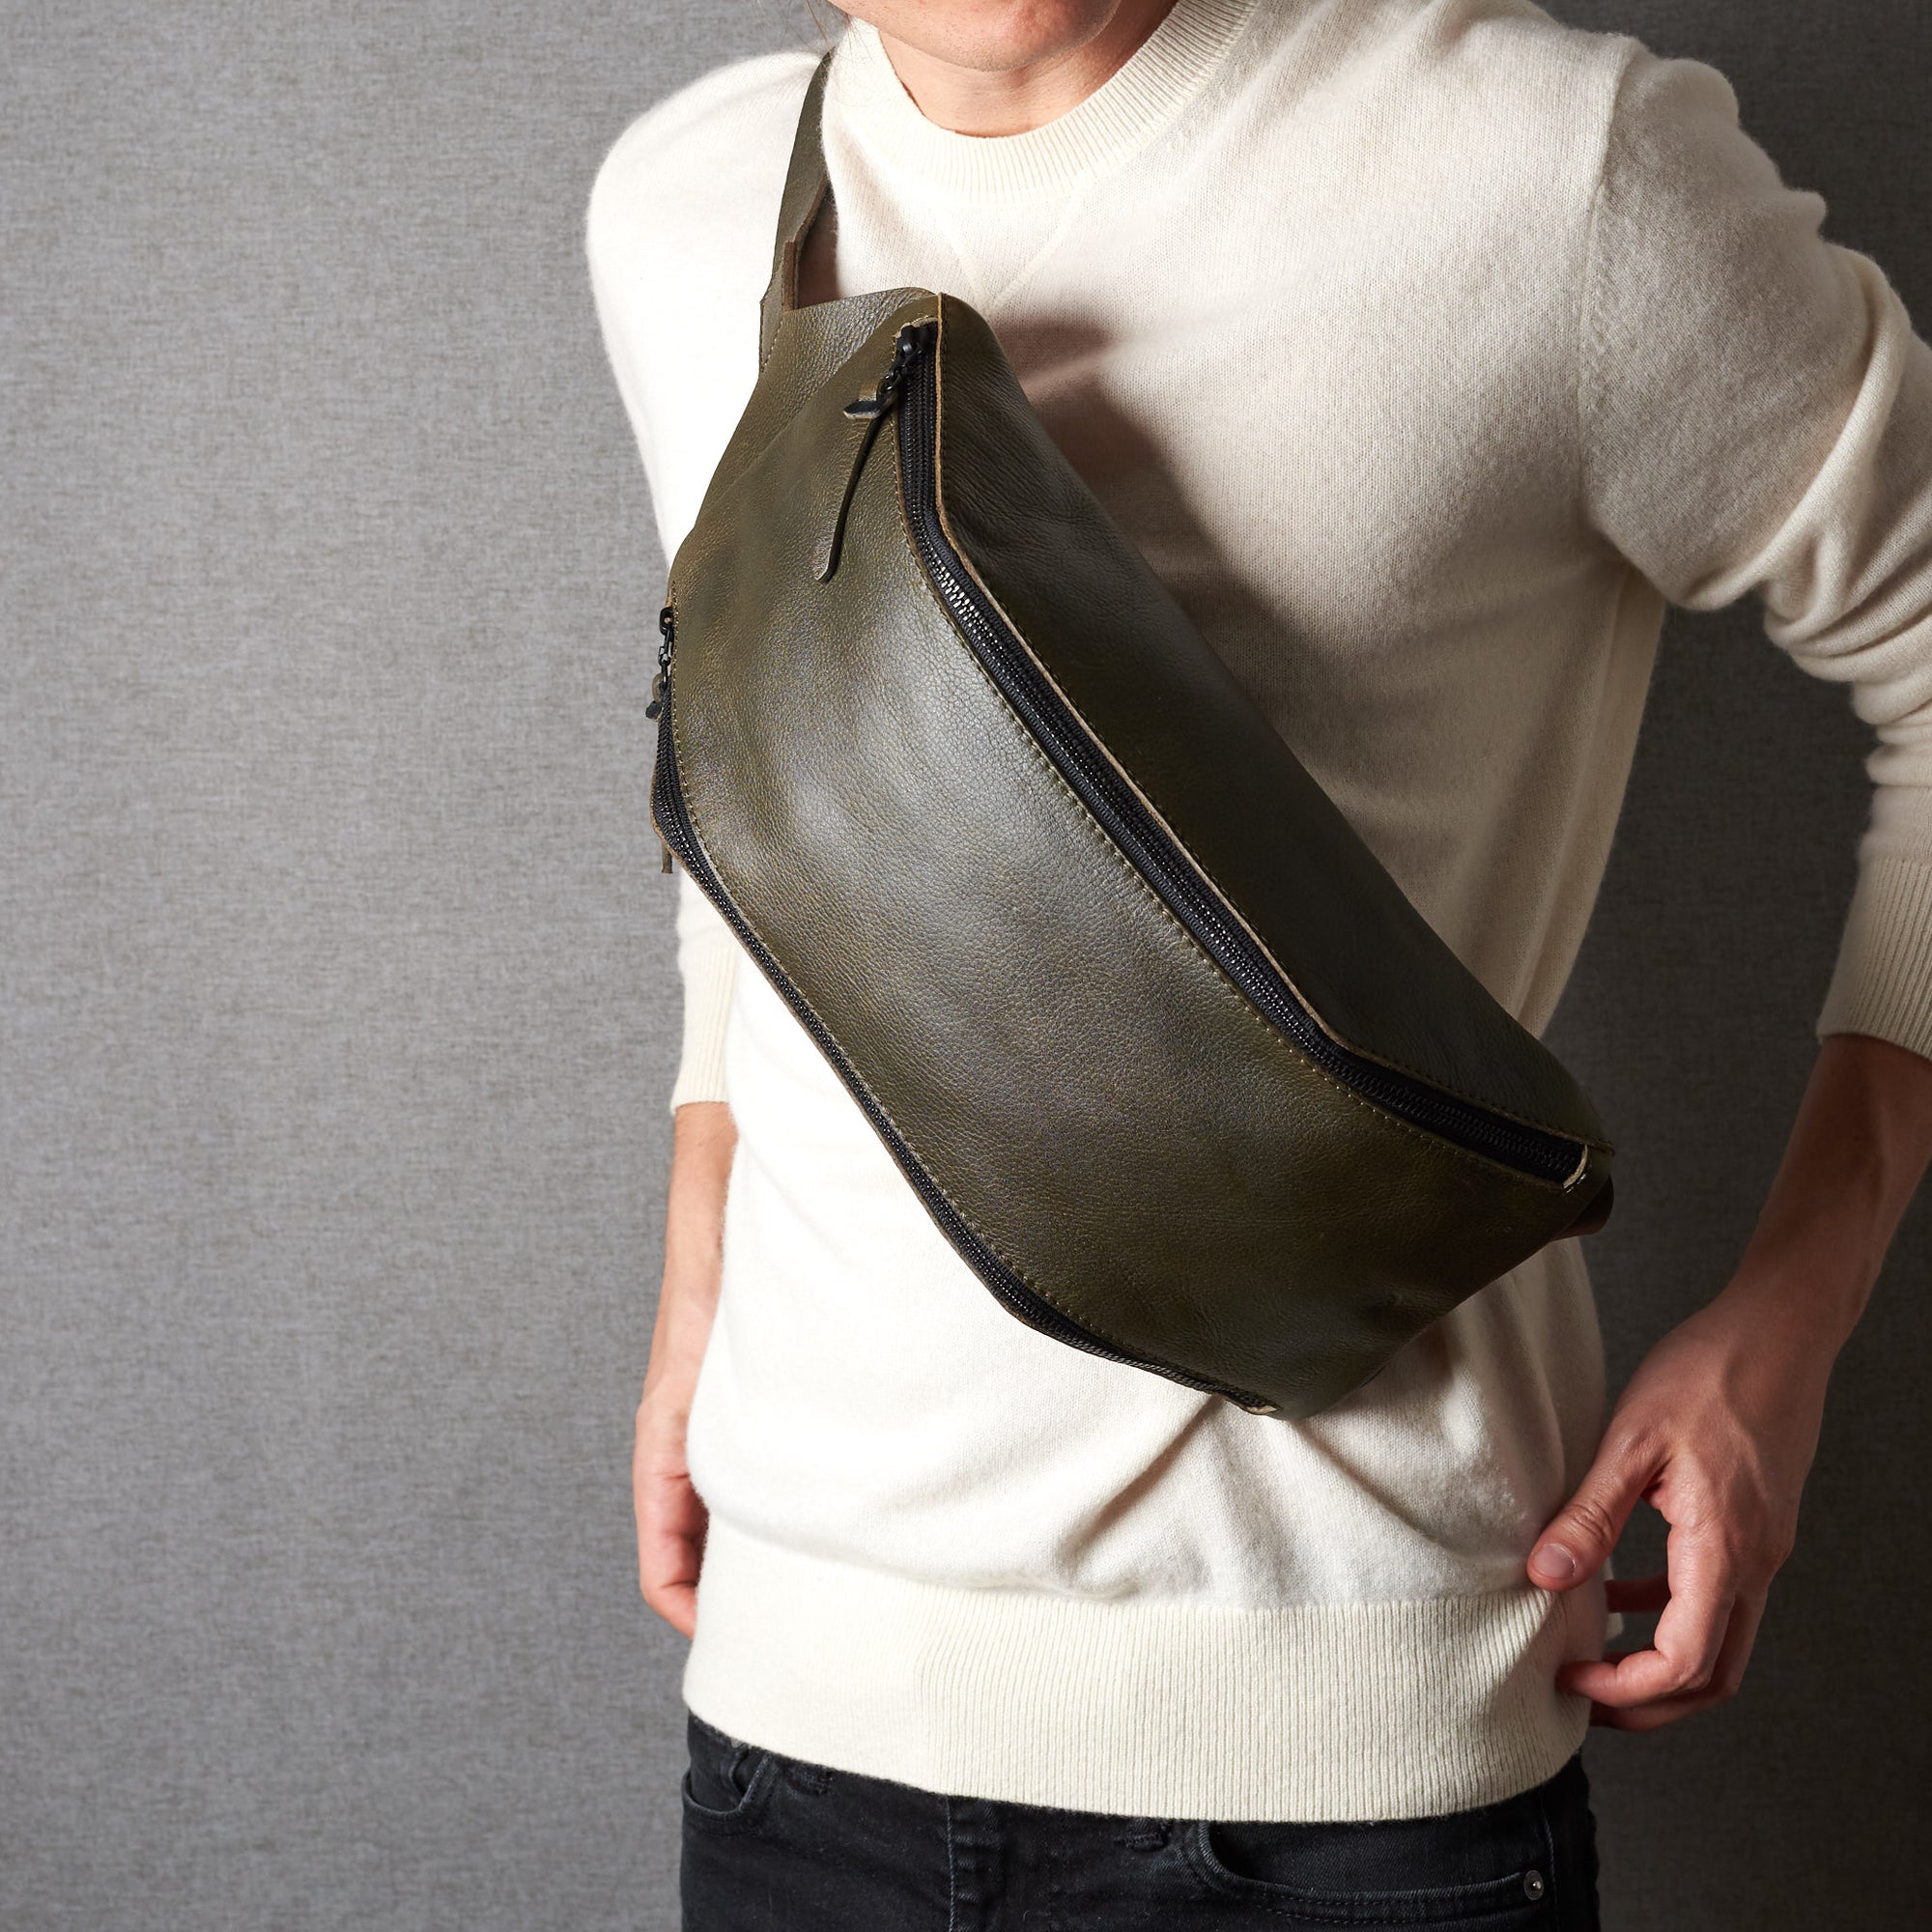 Styling front. Fenek green sling bag for men by Capra Leather. Urban hip bag over the shoulder.